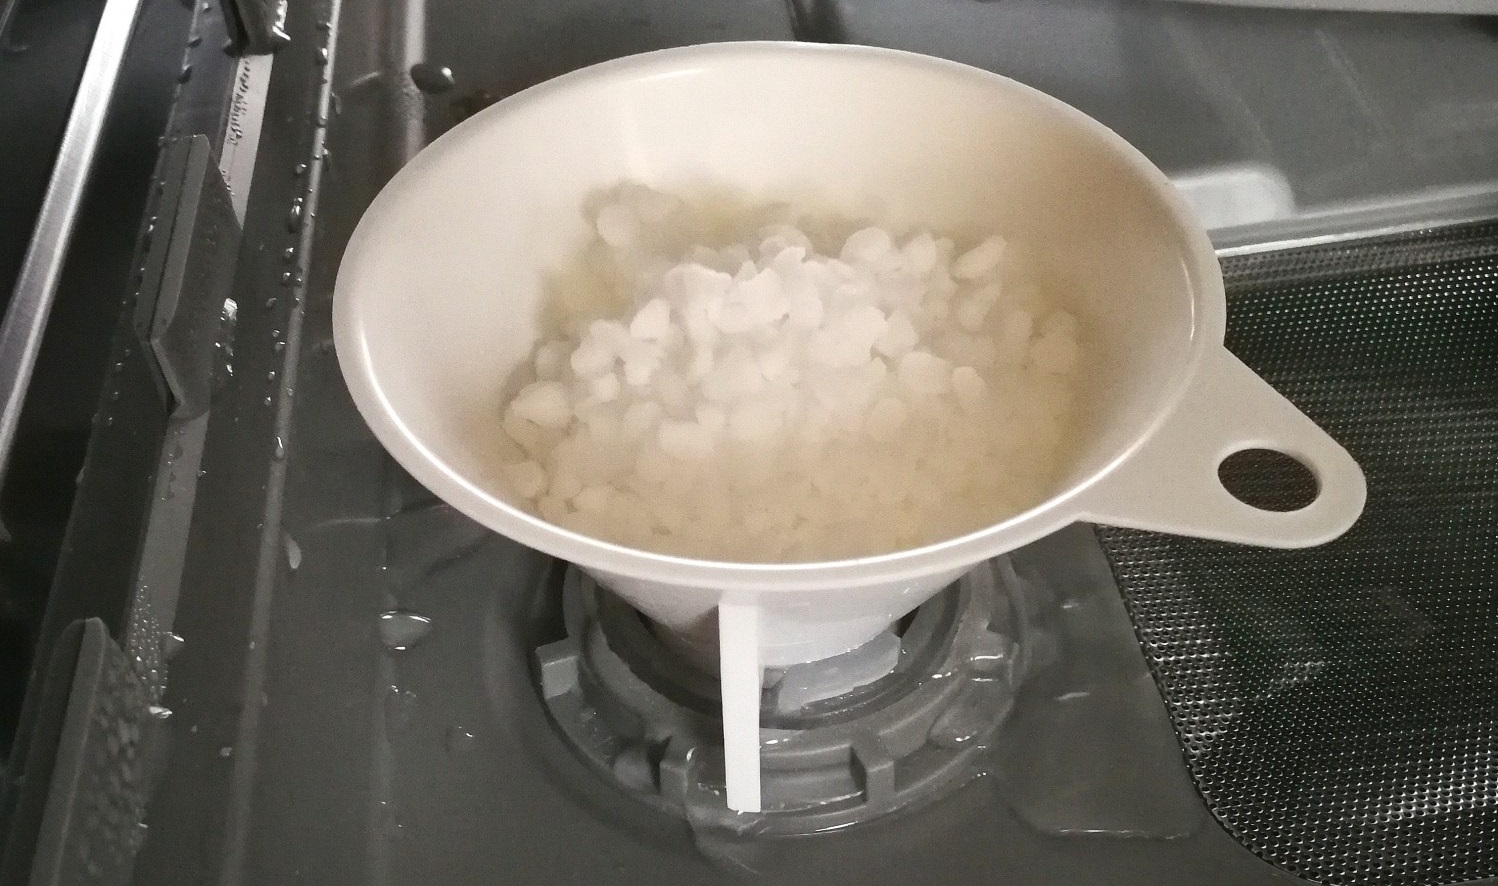 Wie viel Salz soll man in die Spülmaschine geben?